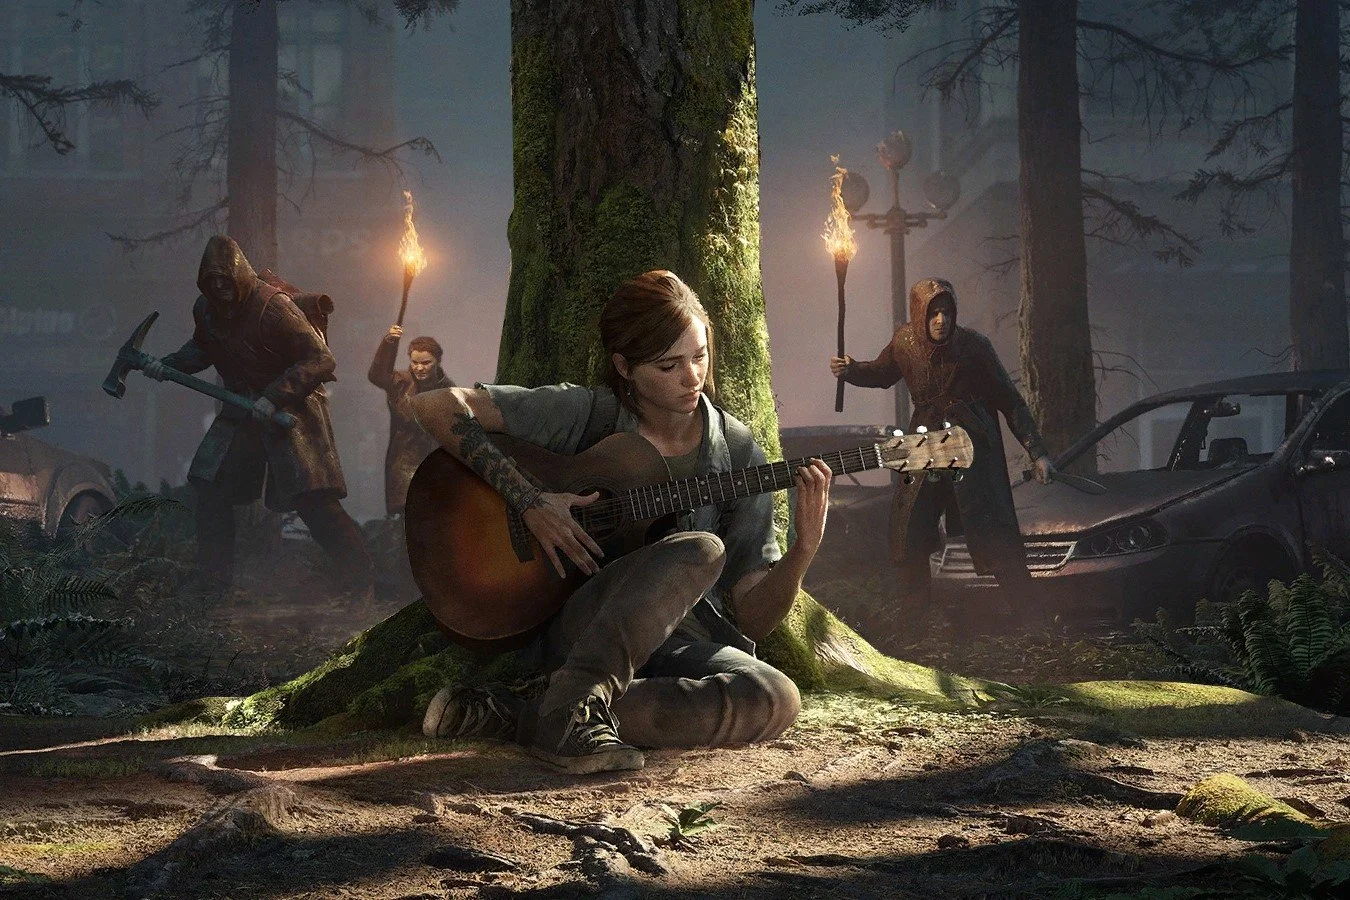 Появились новые фото со съёмок экранизации The Last of Us с рождественским духом - изображение обложка